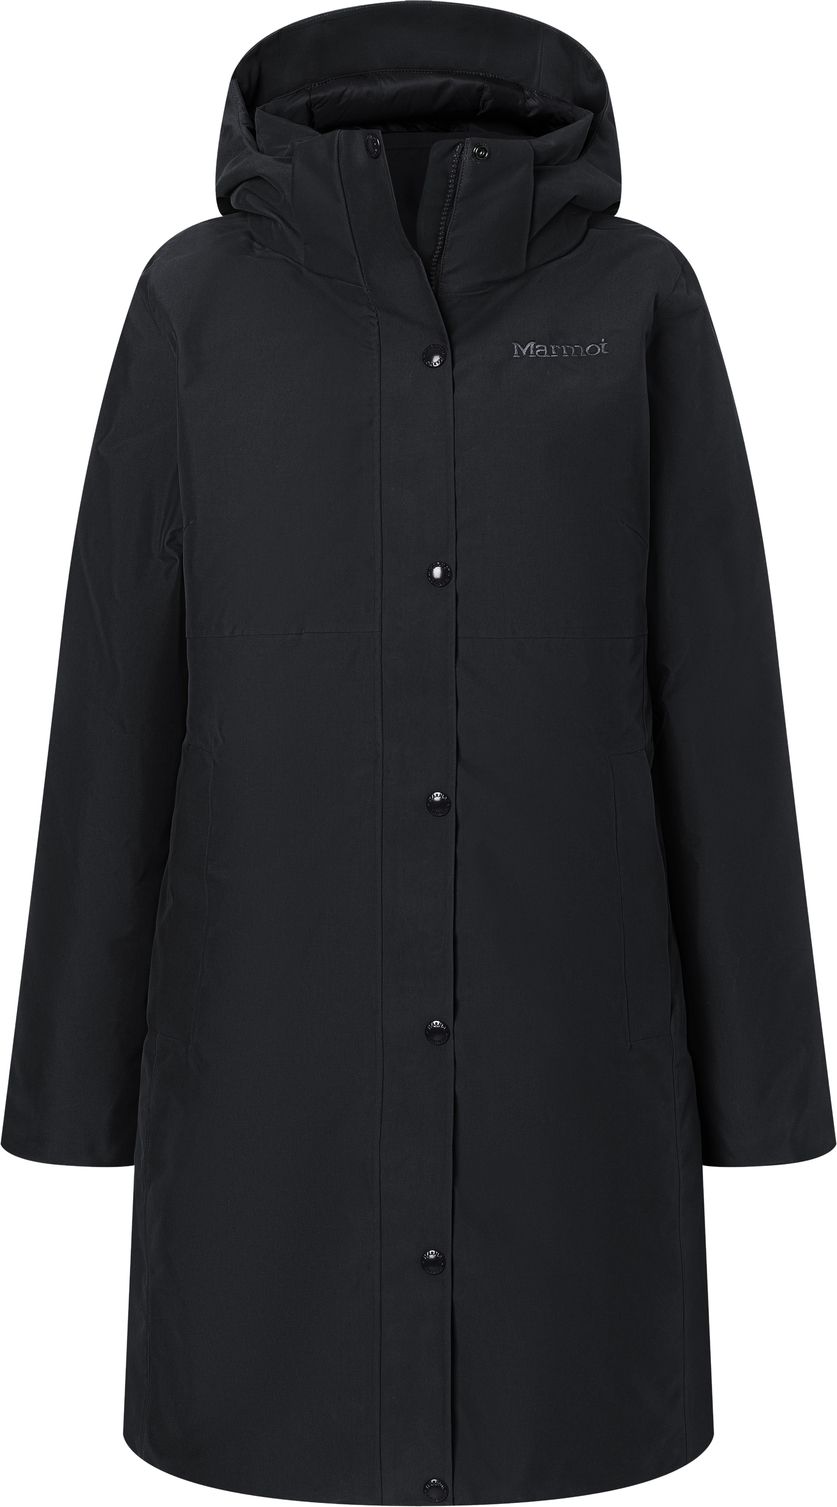 Women's Chelsea Coat Black